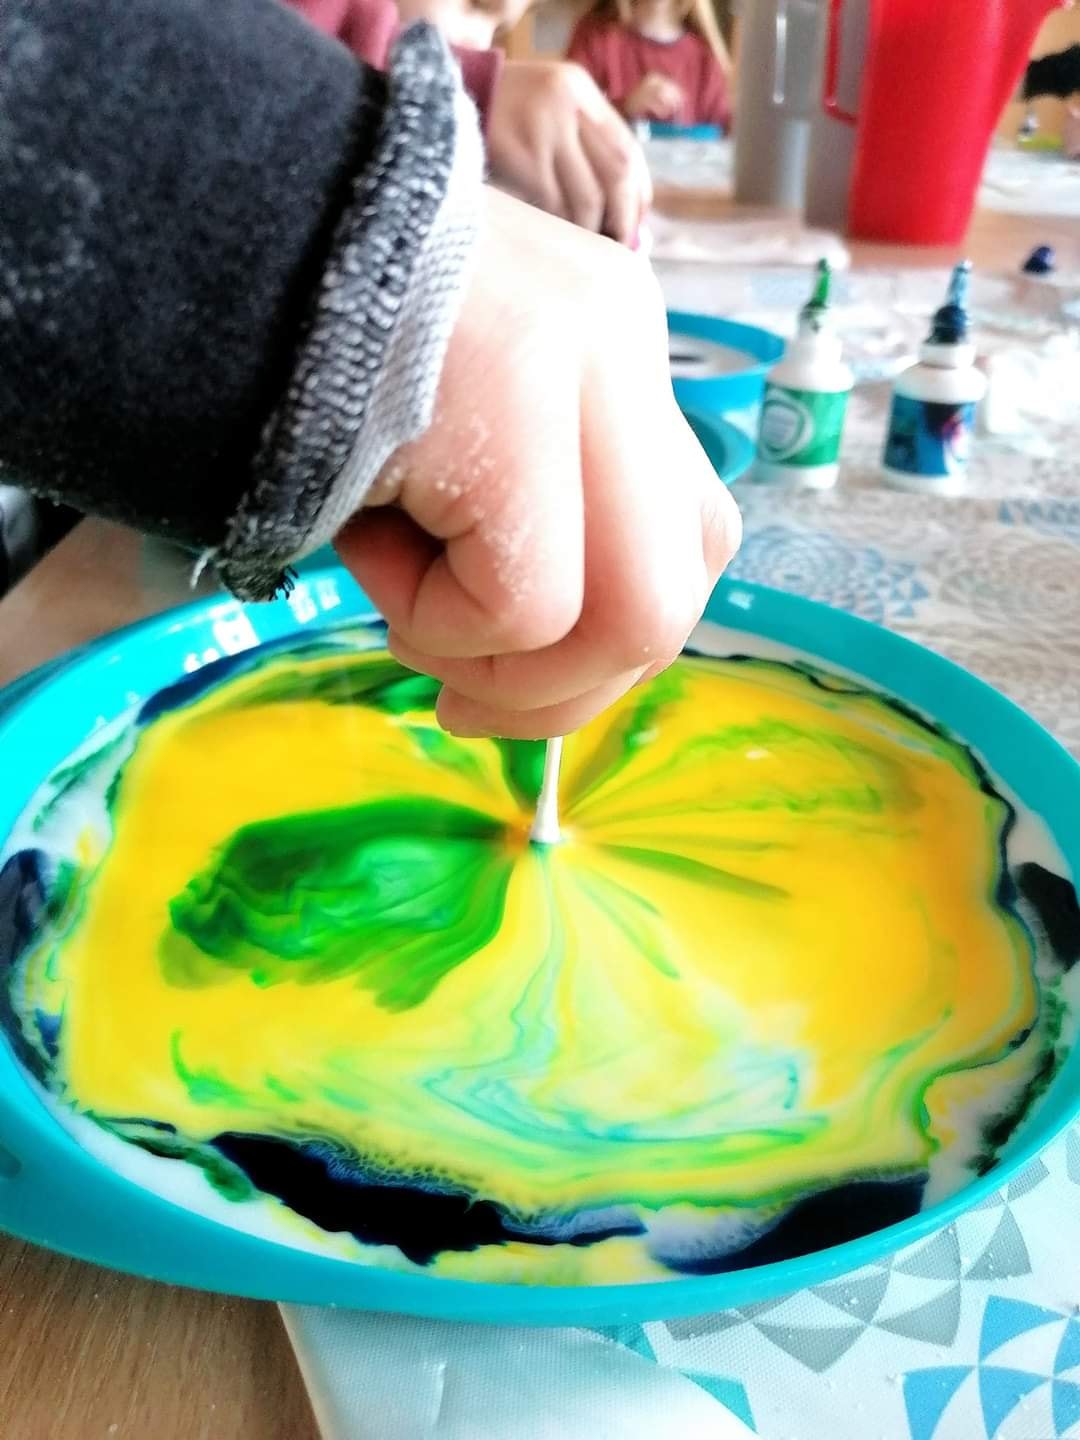 Dziecko wkłada patyczek higieniczny do mozaiki z farby